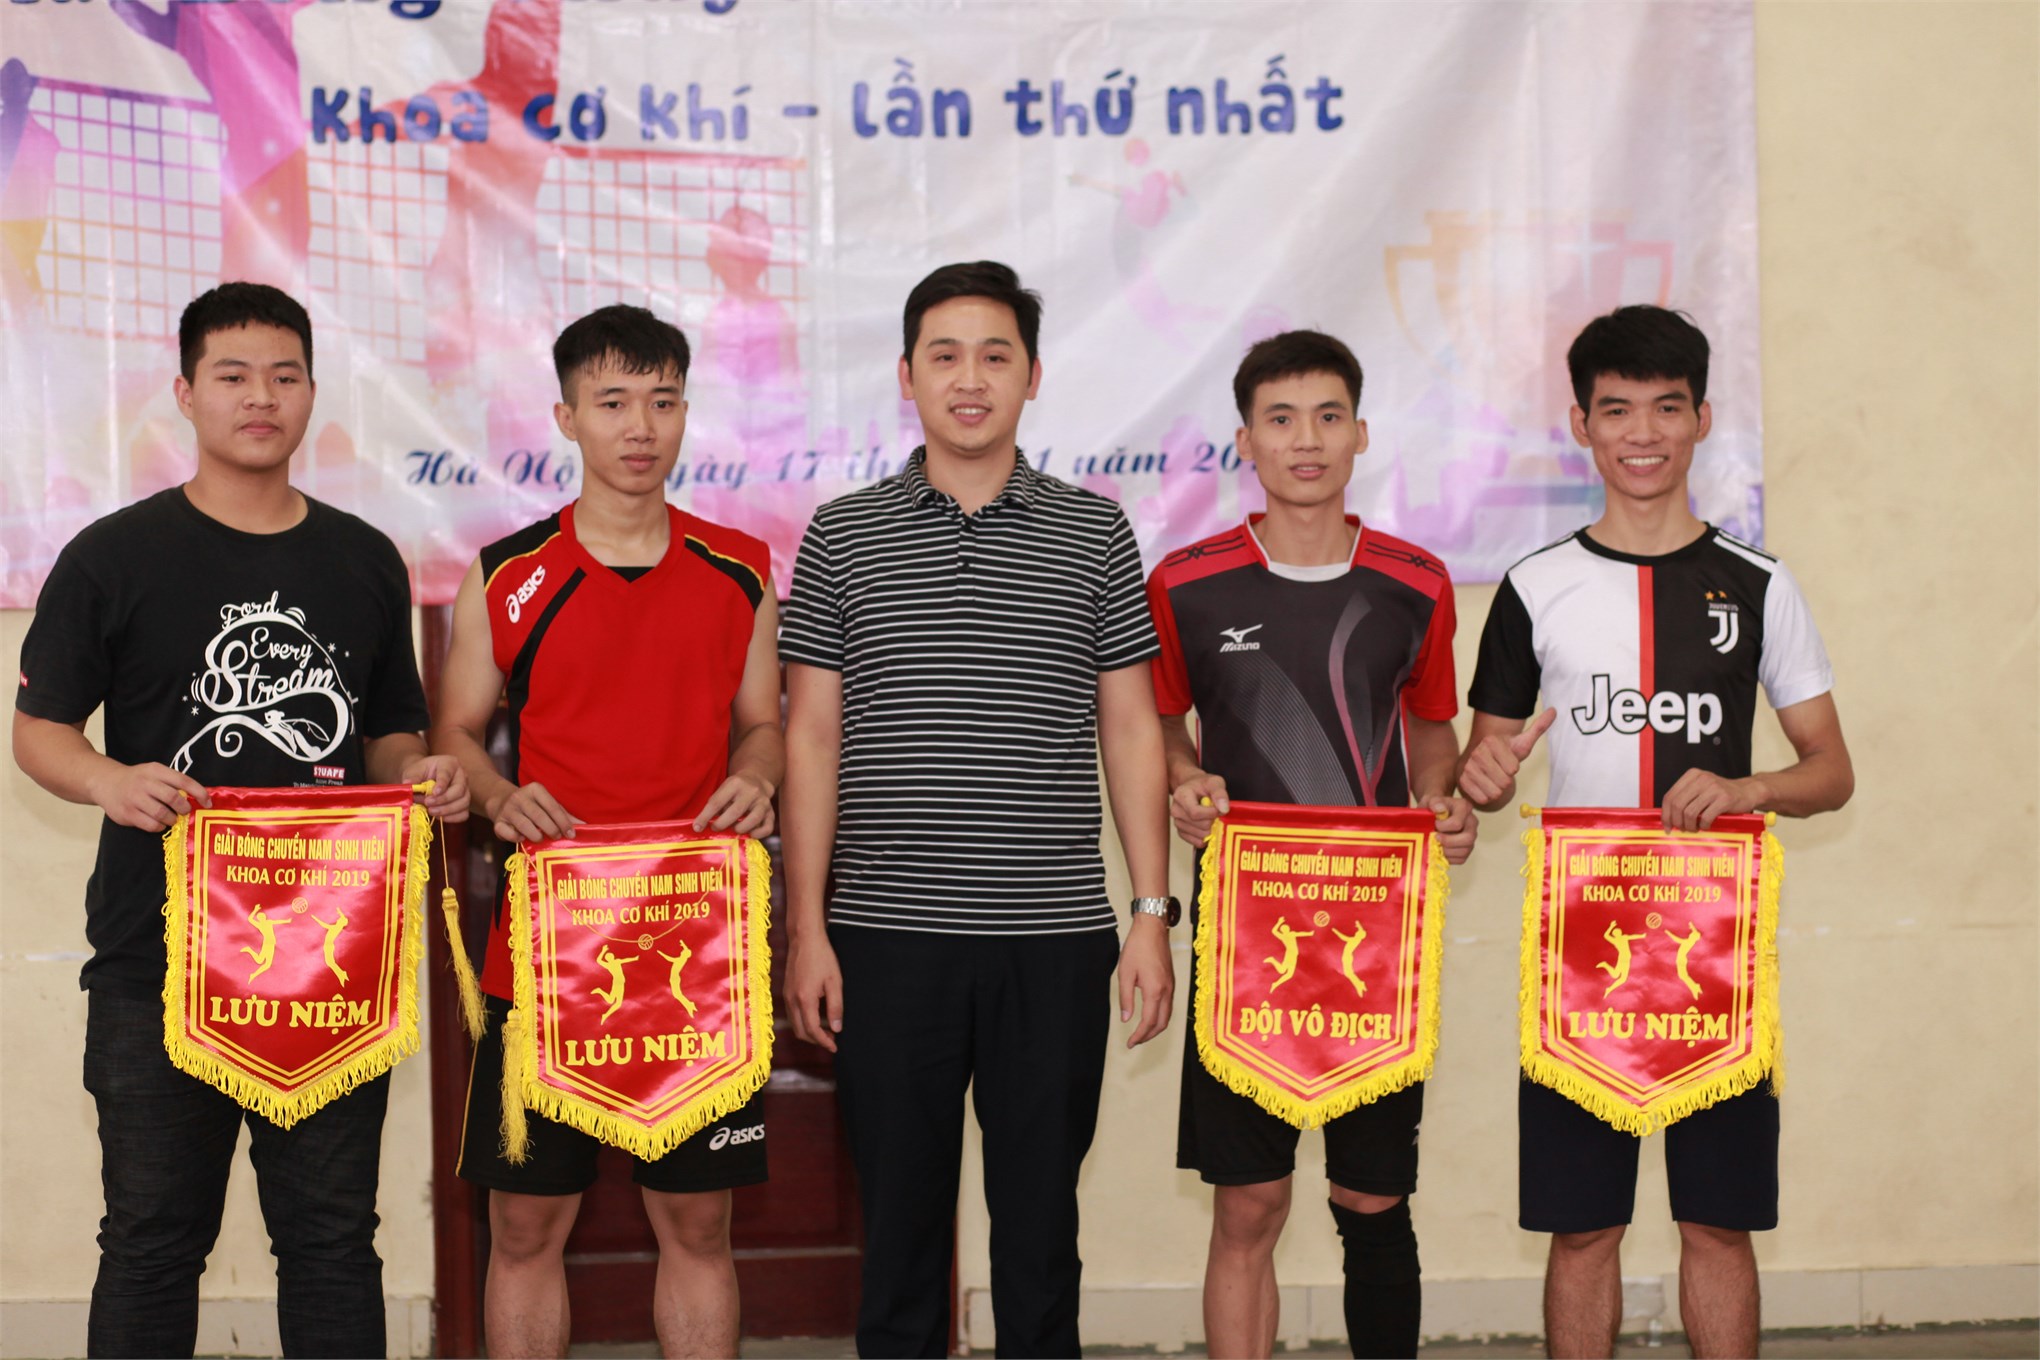 Đội 3 giành giải nhất Giải bóng chuyền sinh viên khoa Cơ khí năm 2019